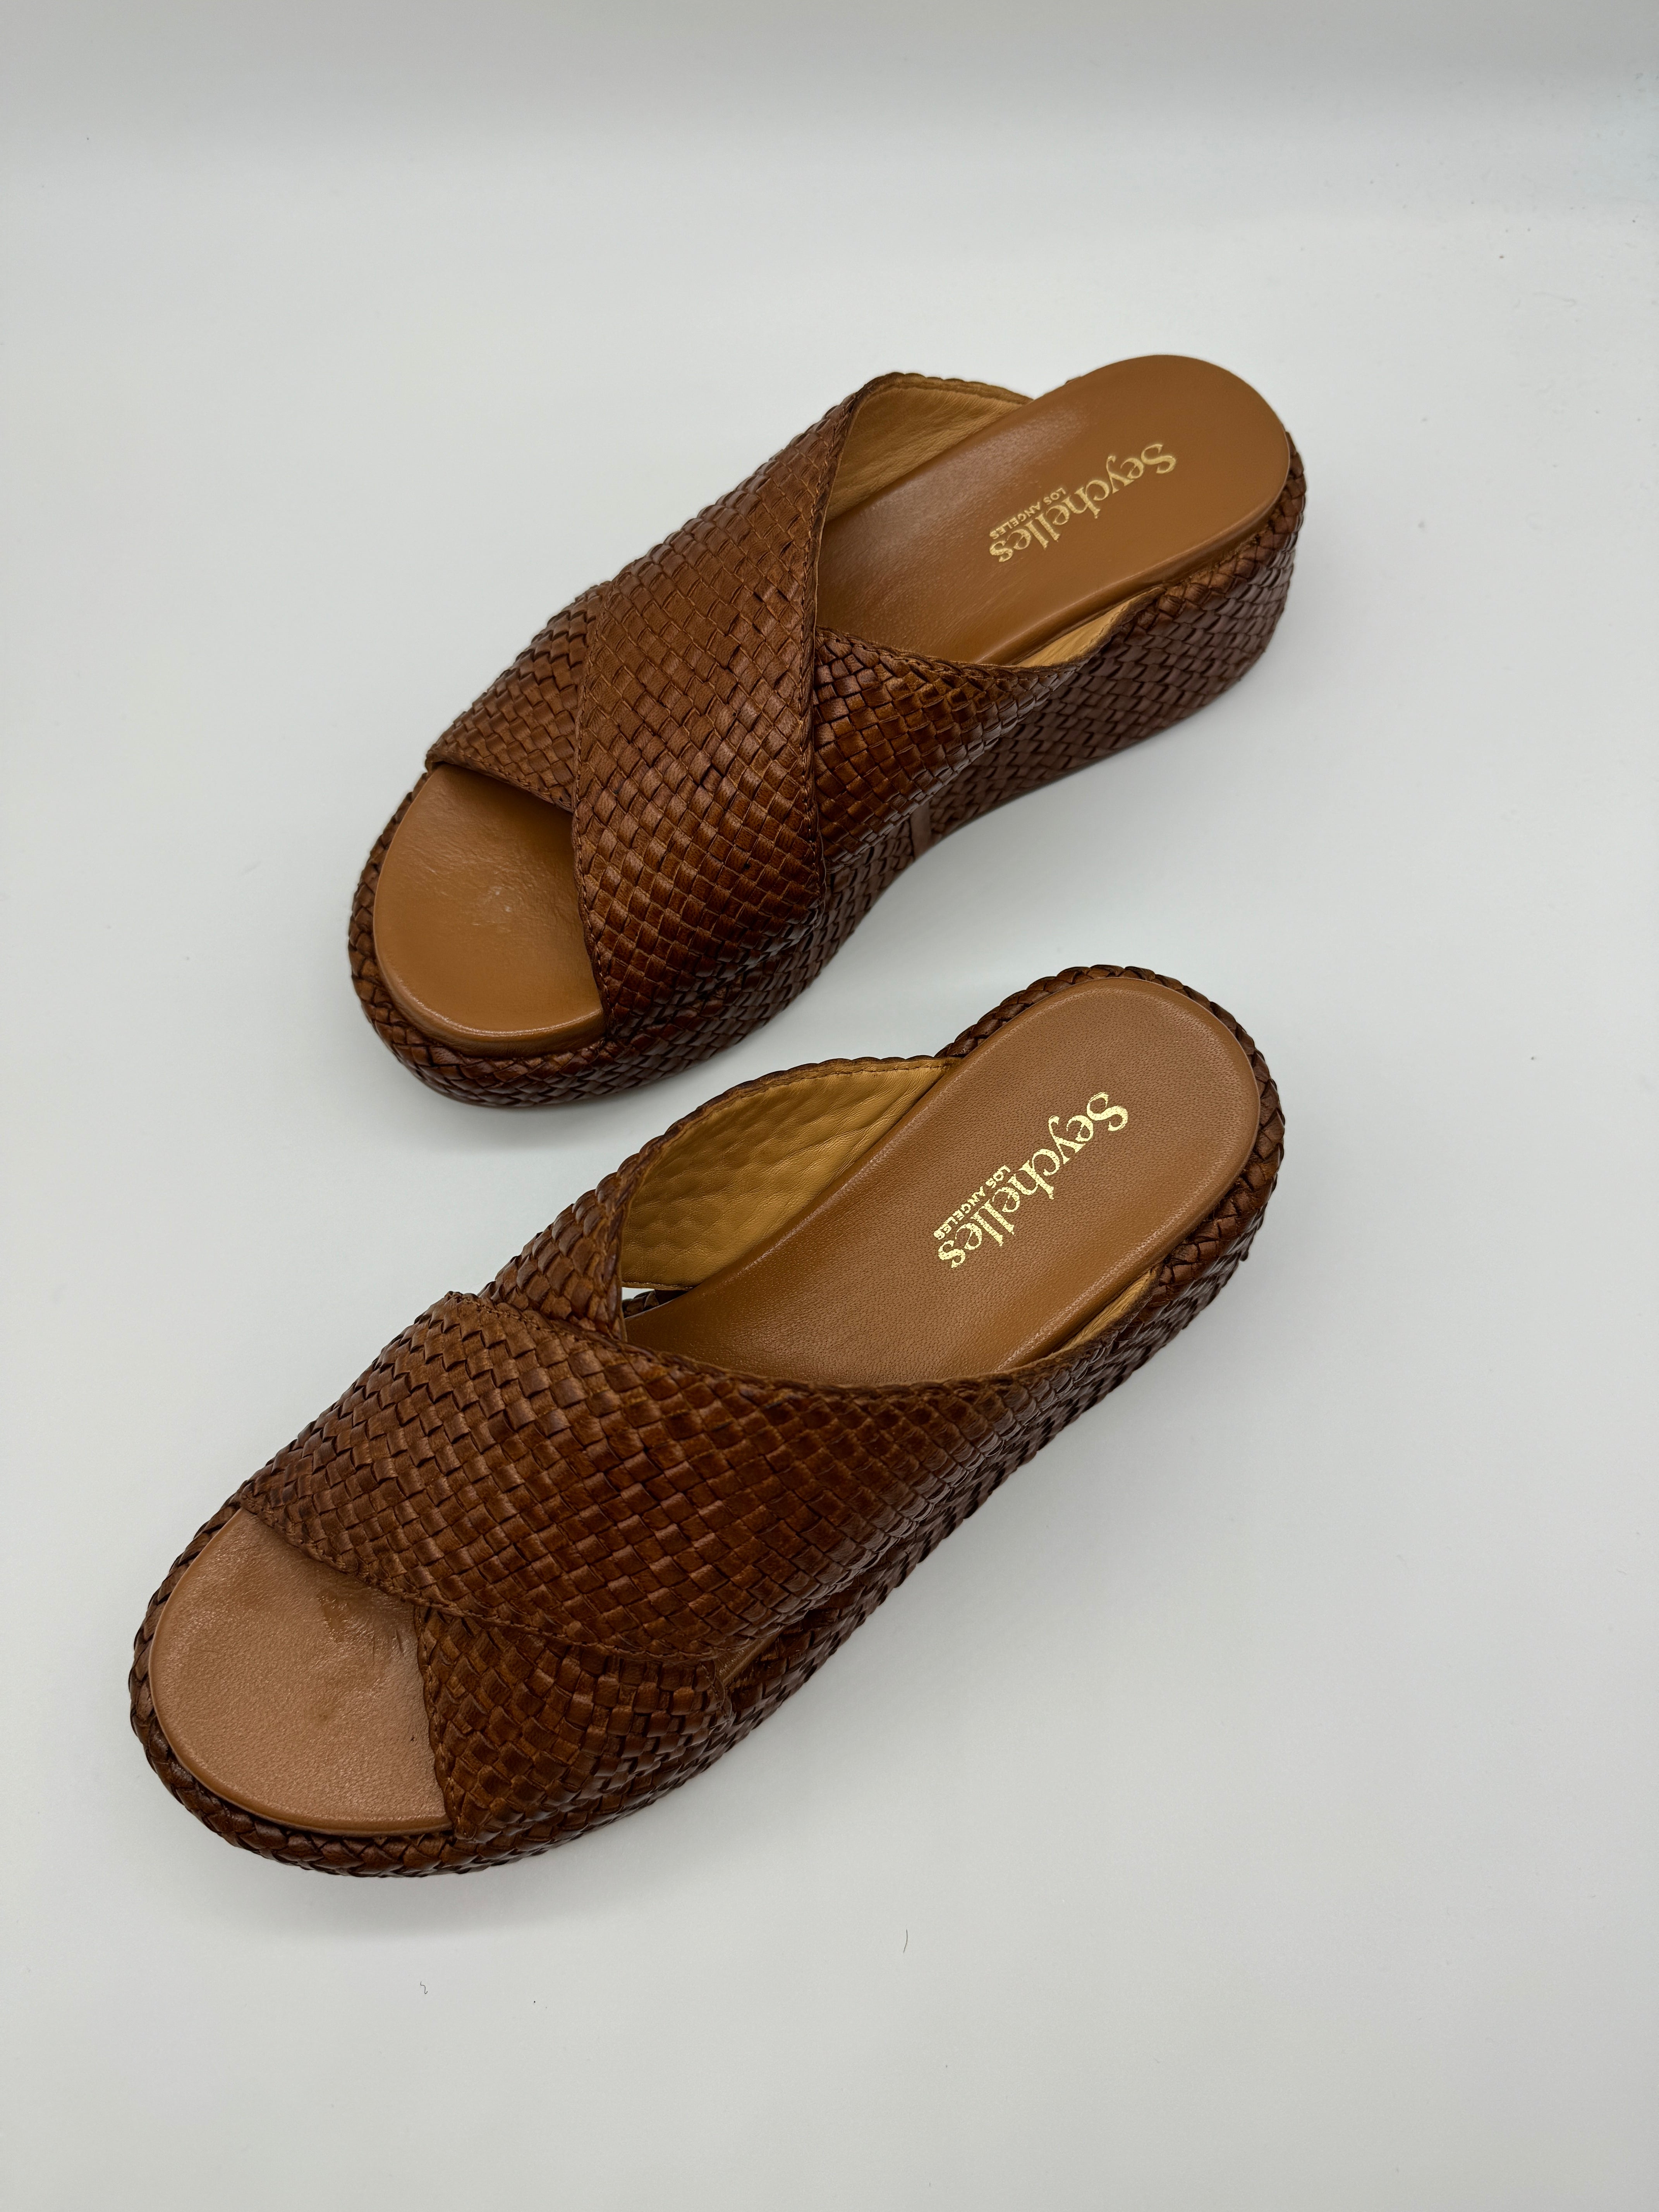 Seychelles Key West Sandals in Tan-312 Shoes-Little Bird Boutique